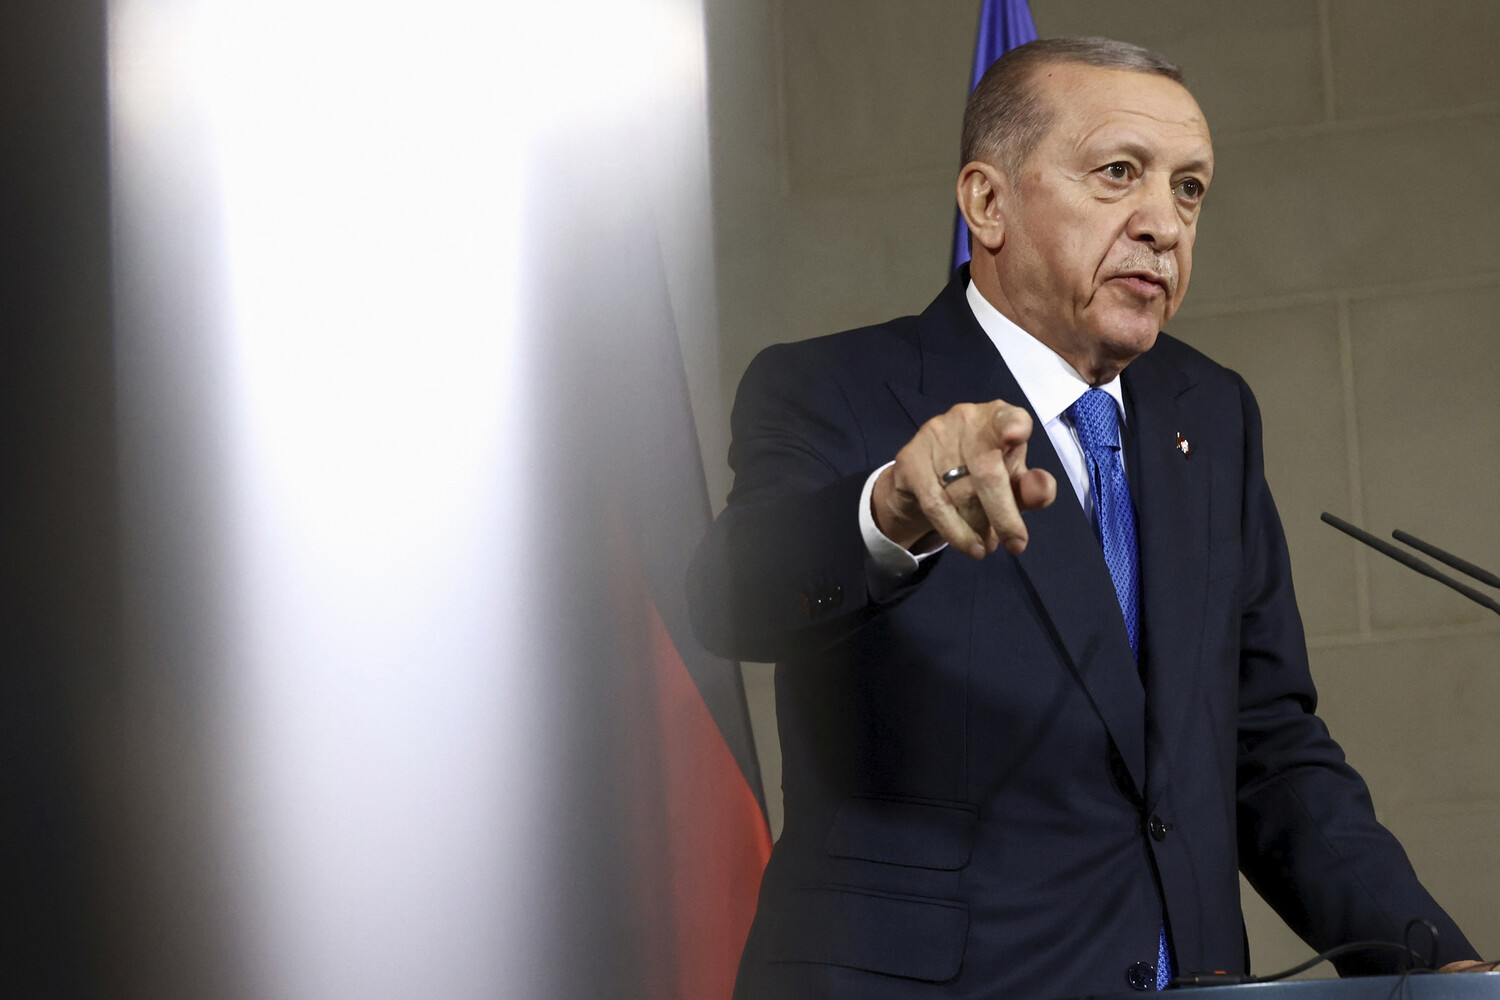  Немецкая партия, связанная с президентом Турции, не может открыть счет в местных банках 